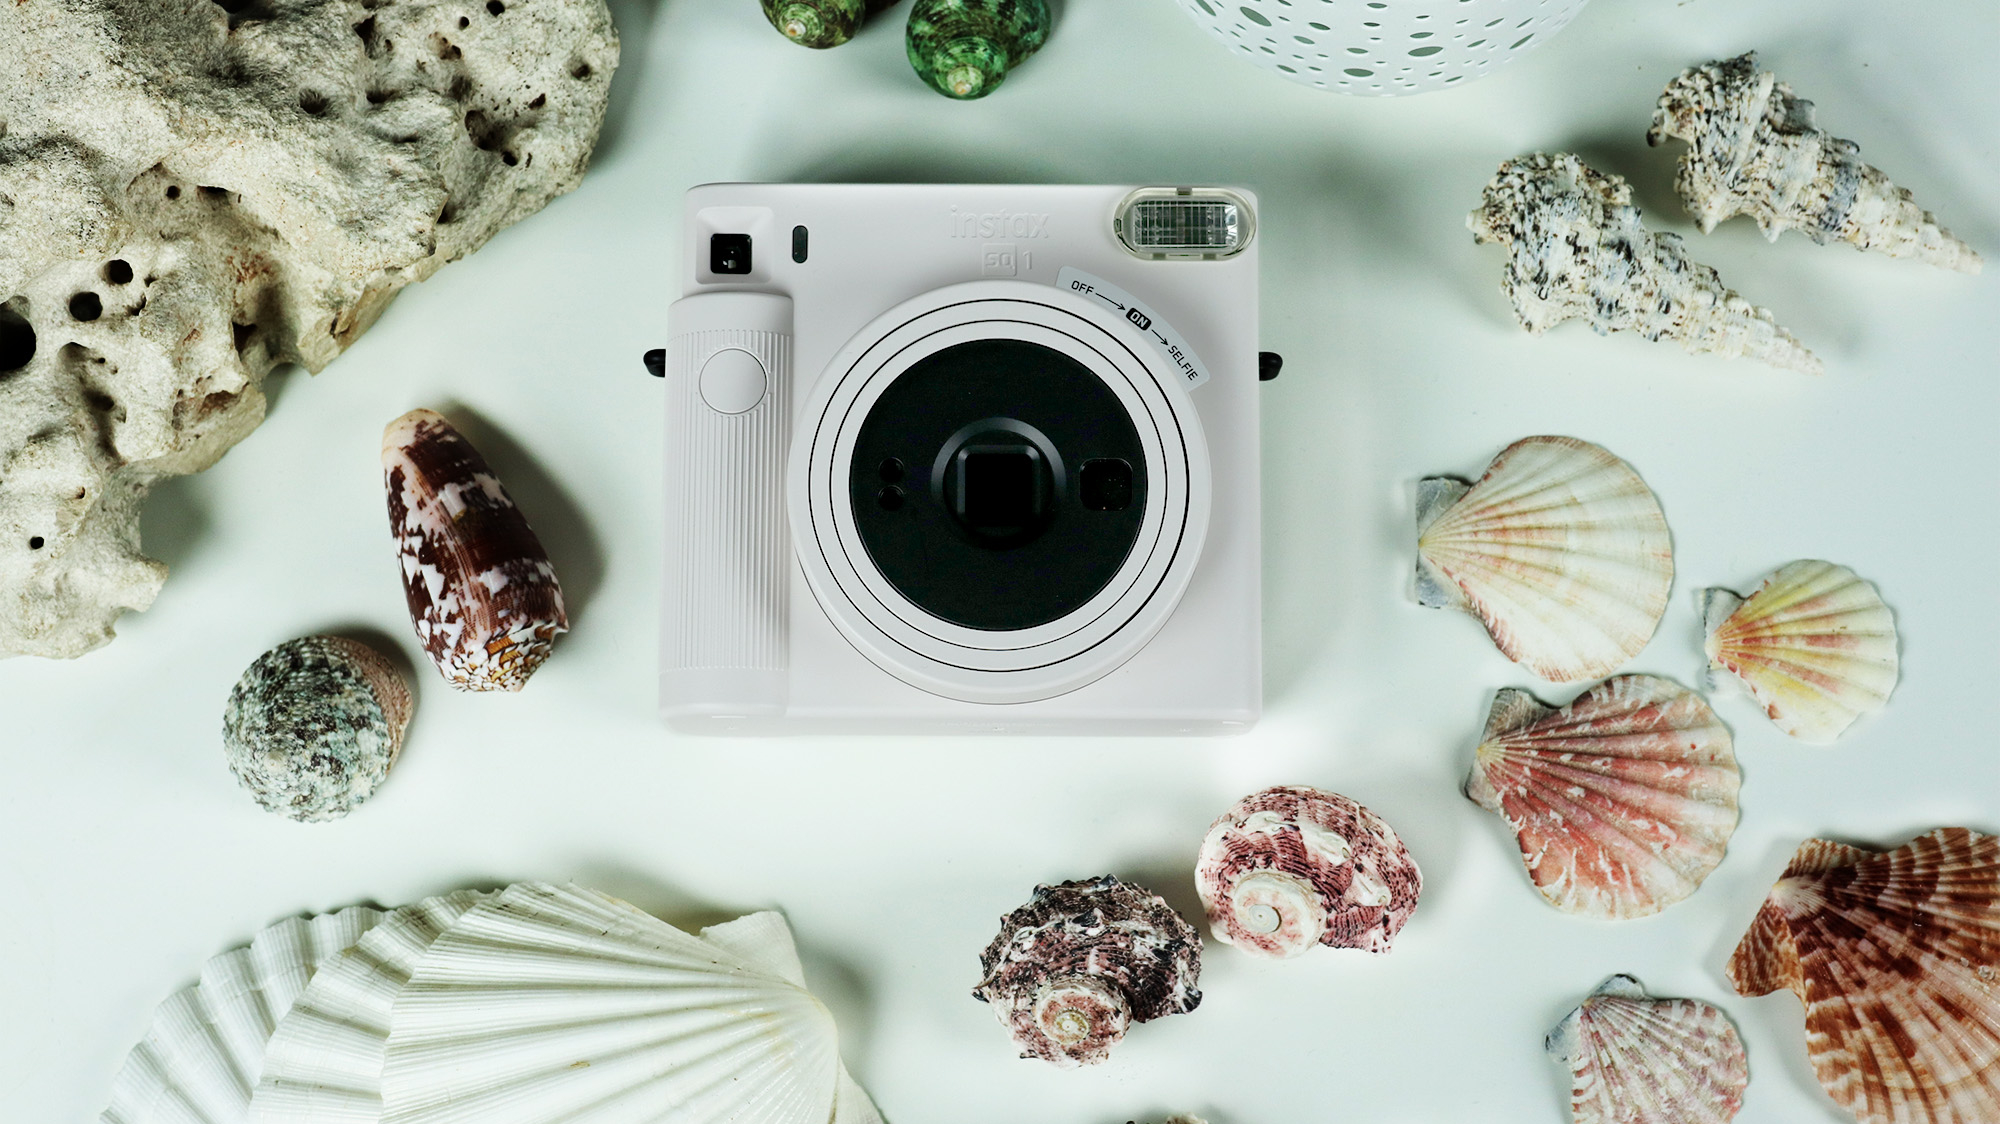 Sofortbildkamera Fujifilm Instax SQ1 im Test: Sofortbild im quadratischen  Format | heise online